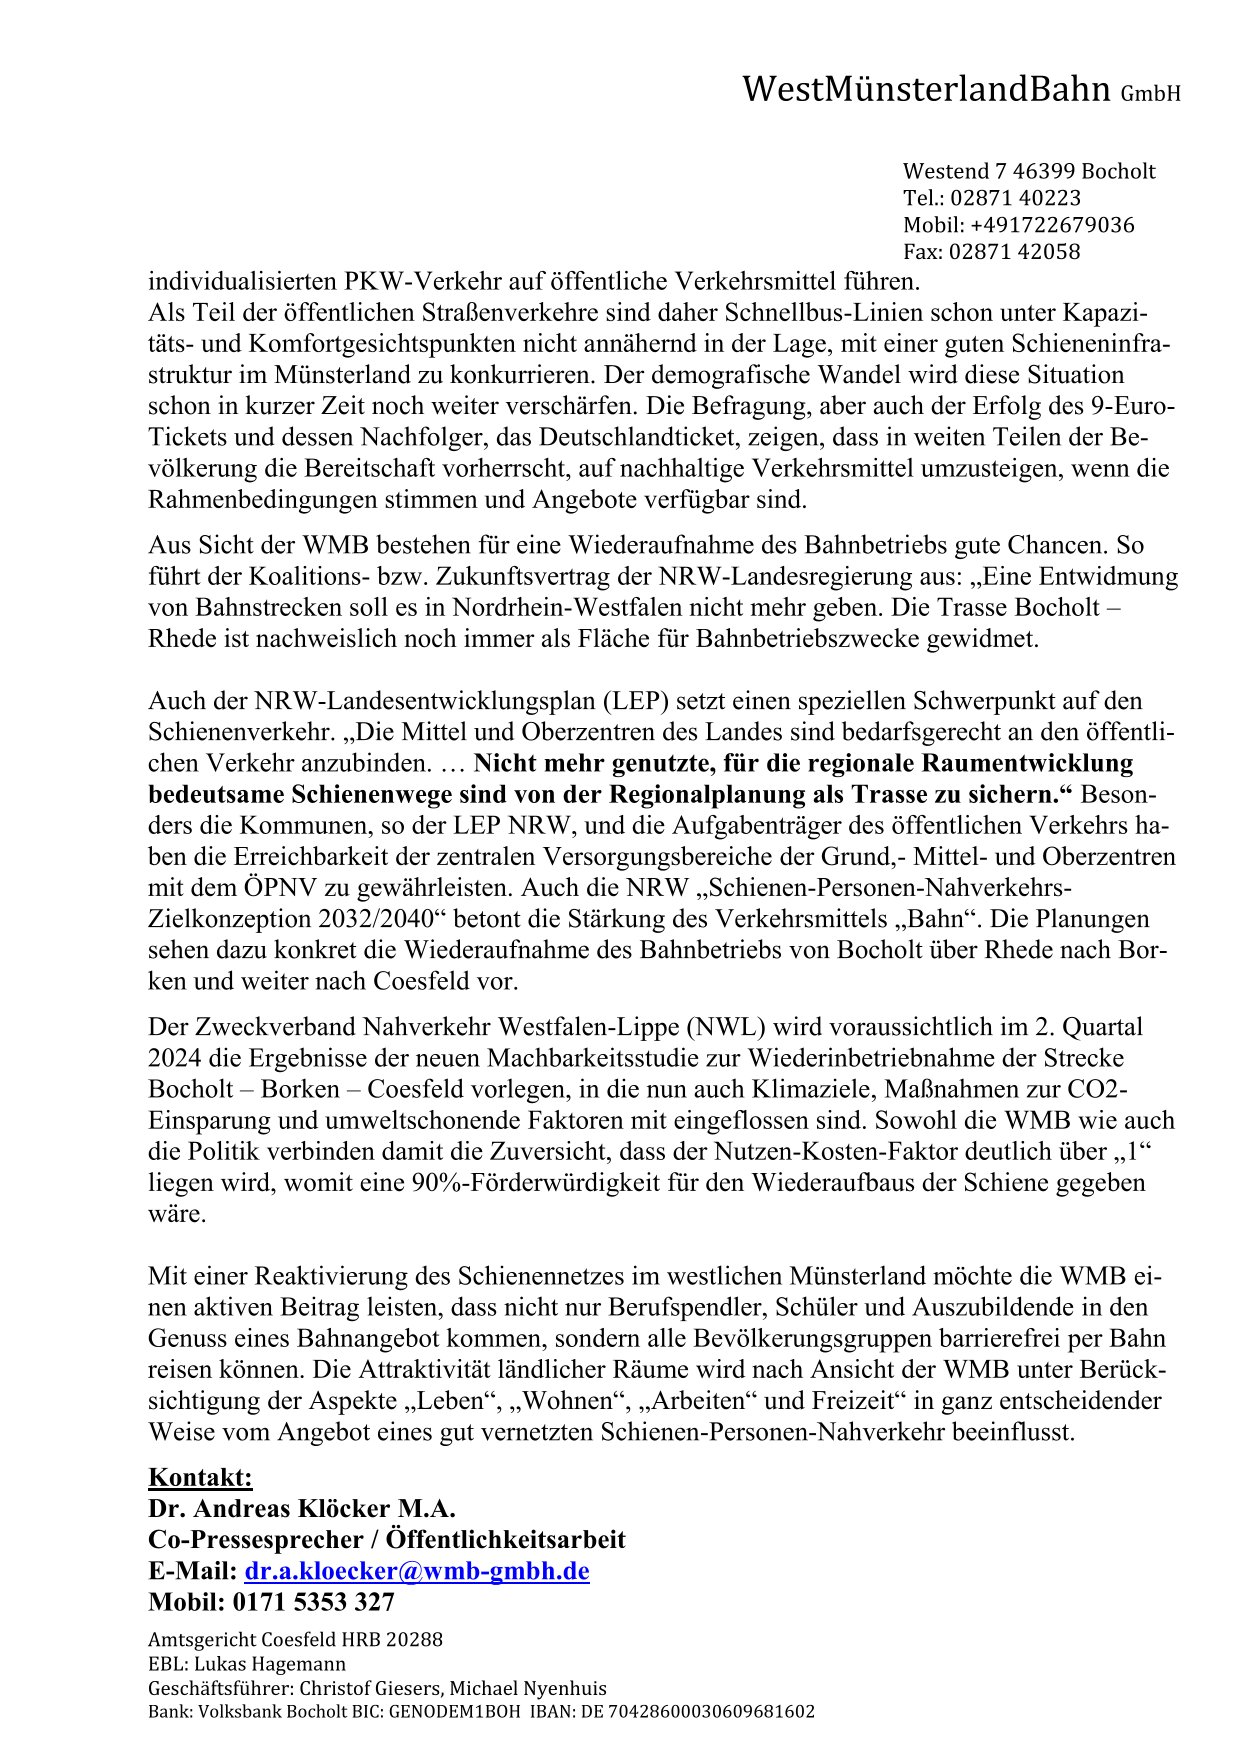 WMB-Pressemitteilung v. 06.02.2024 Seite 2/2